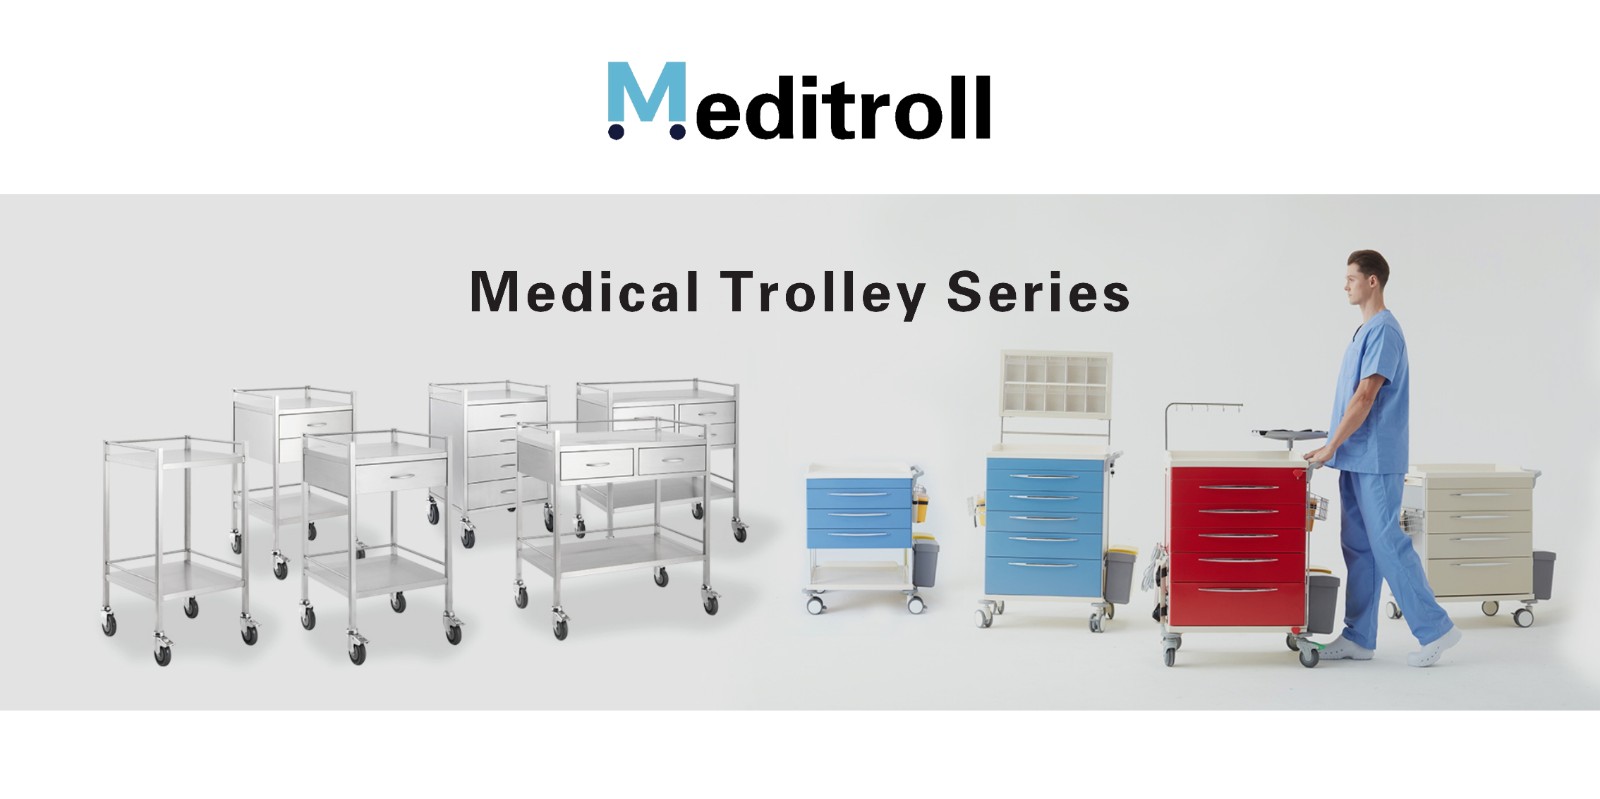 Medical emergency trolley